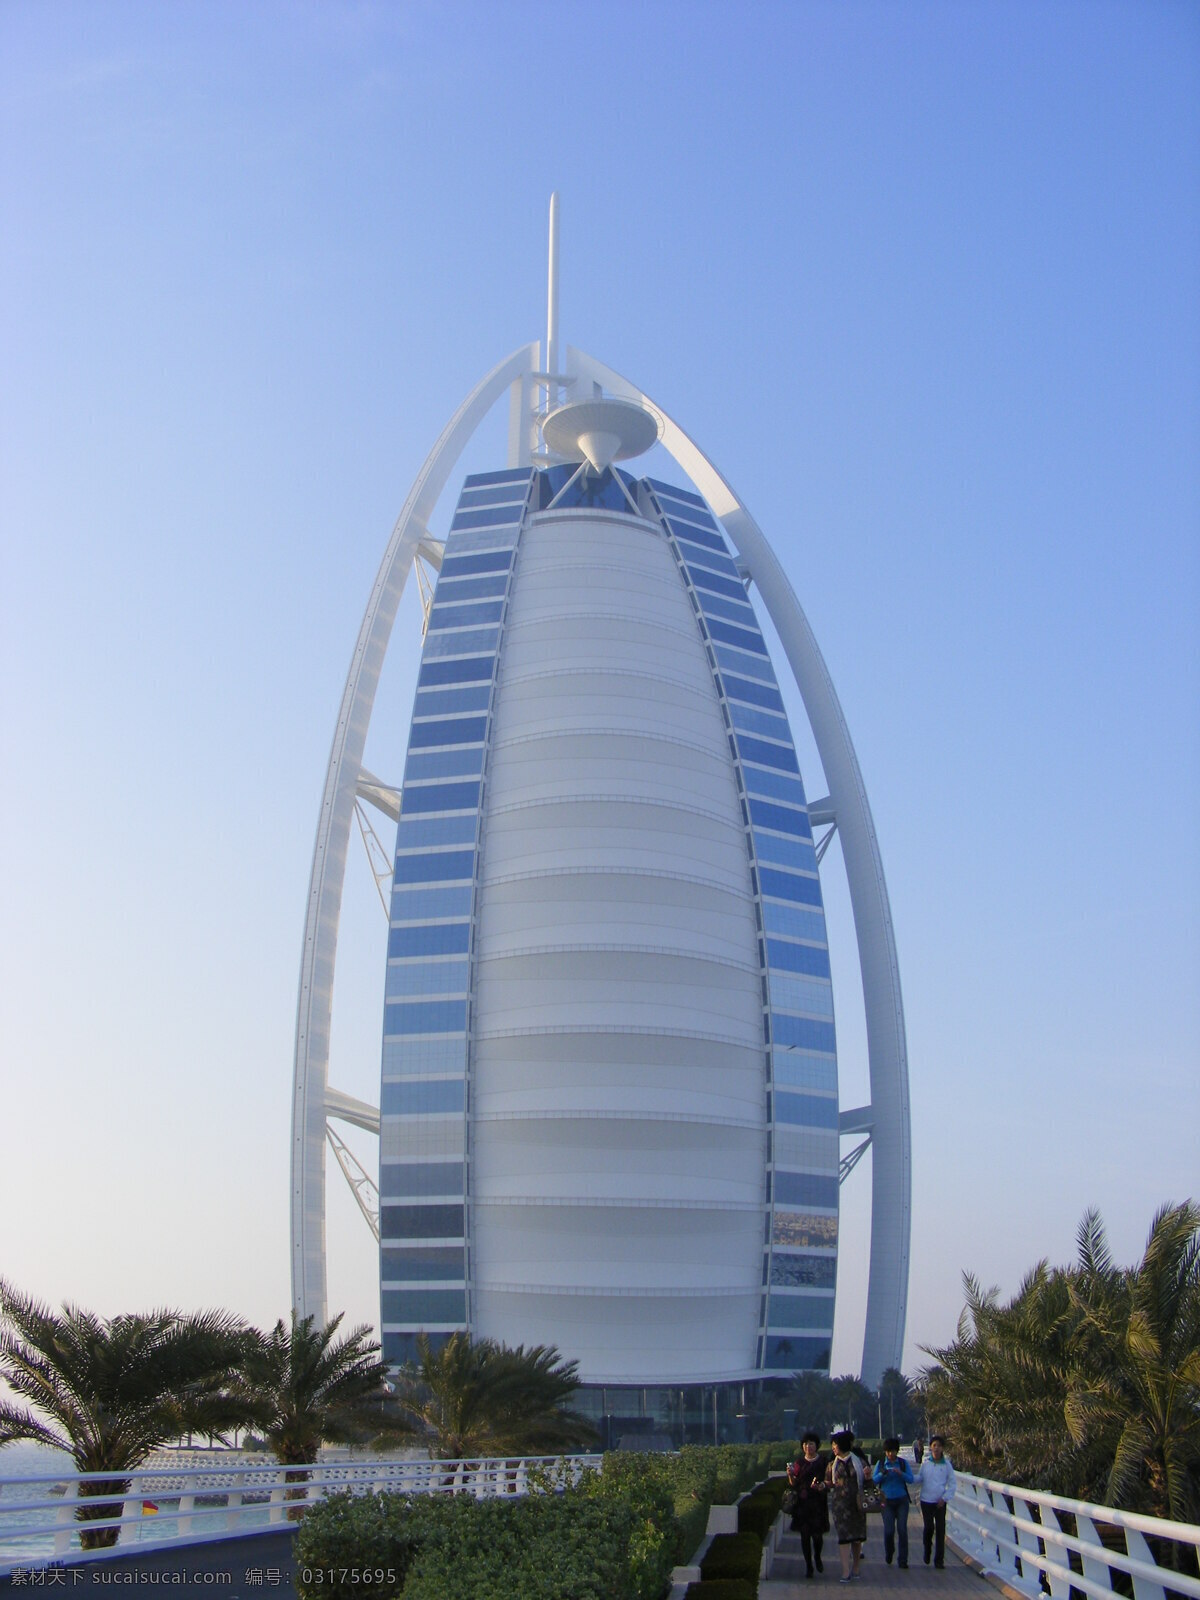 迪拜 国外旅游 海滩 旅游摄影 奢华 帆船 酒店 帆船酒店 7星 旅游随拍 psd源文件